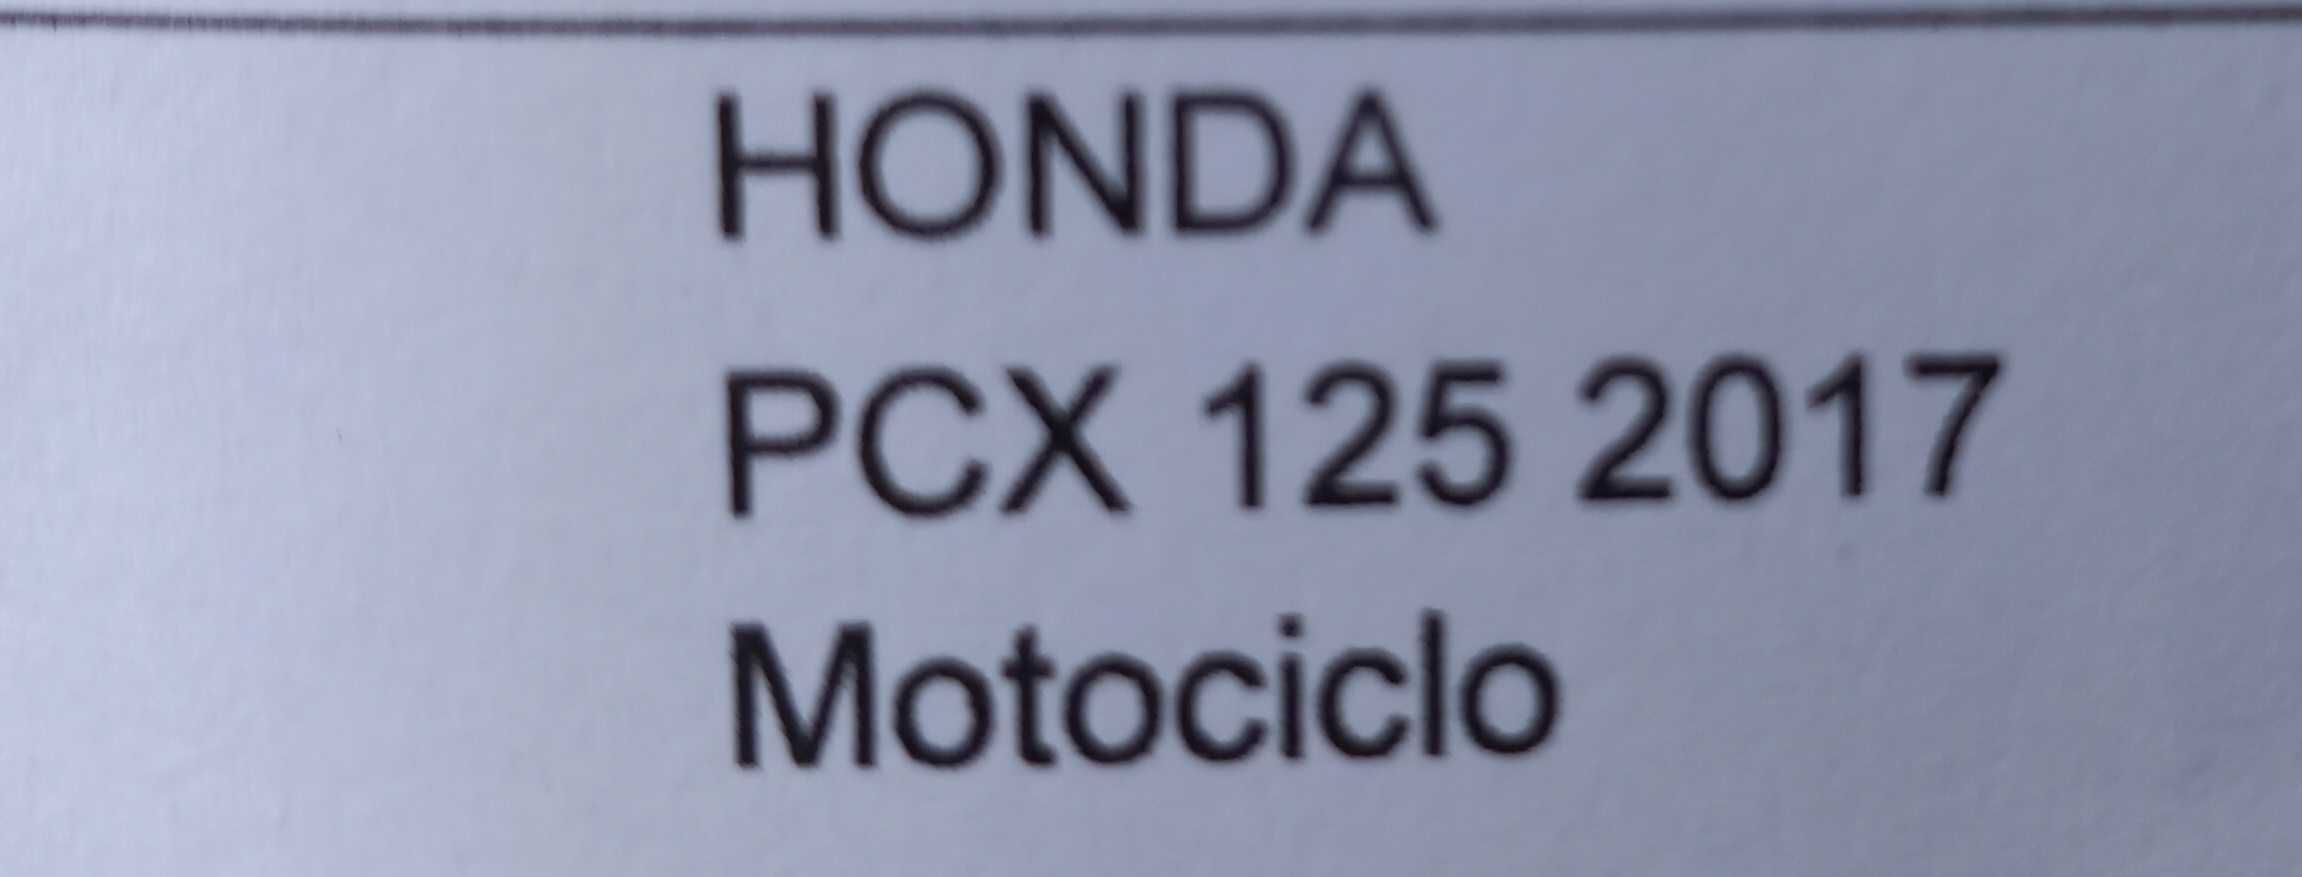 Honda 125 modelo 201 7